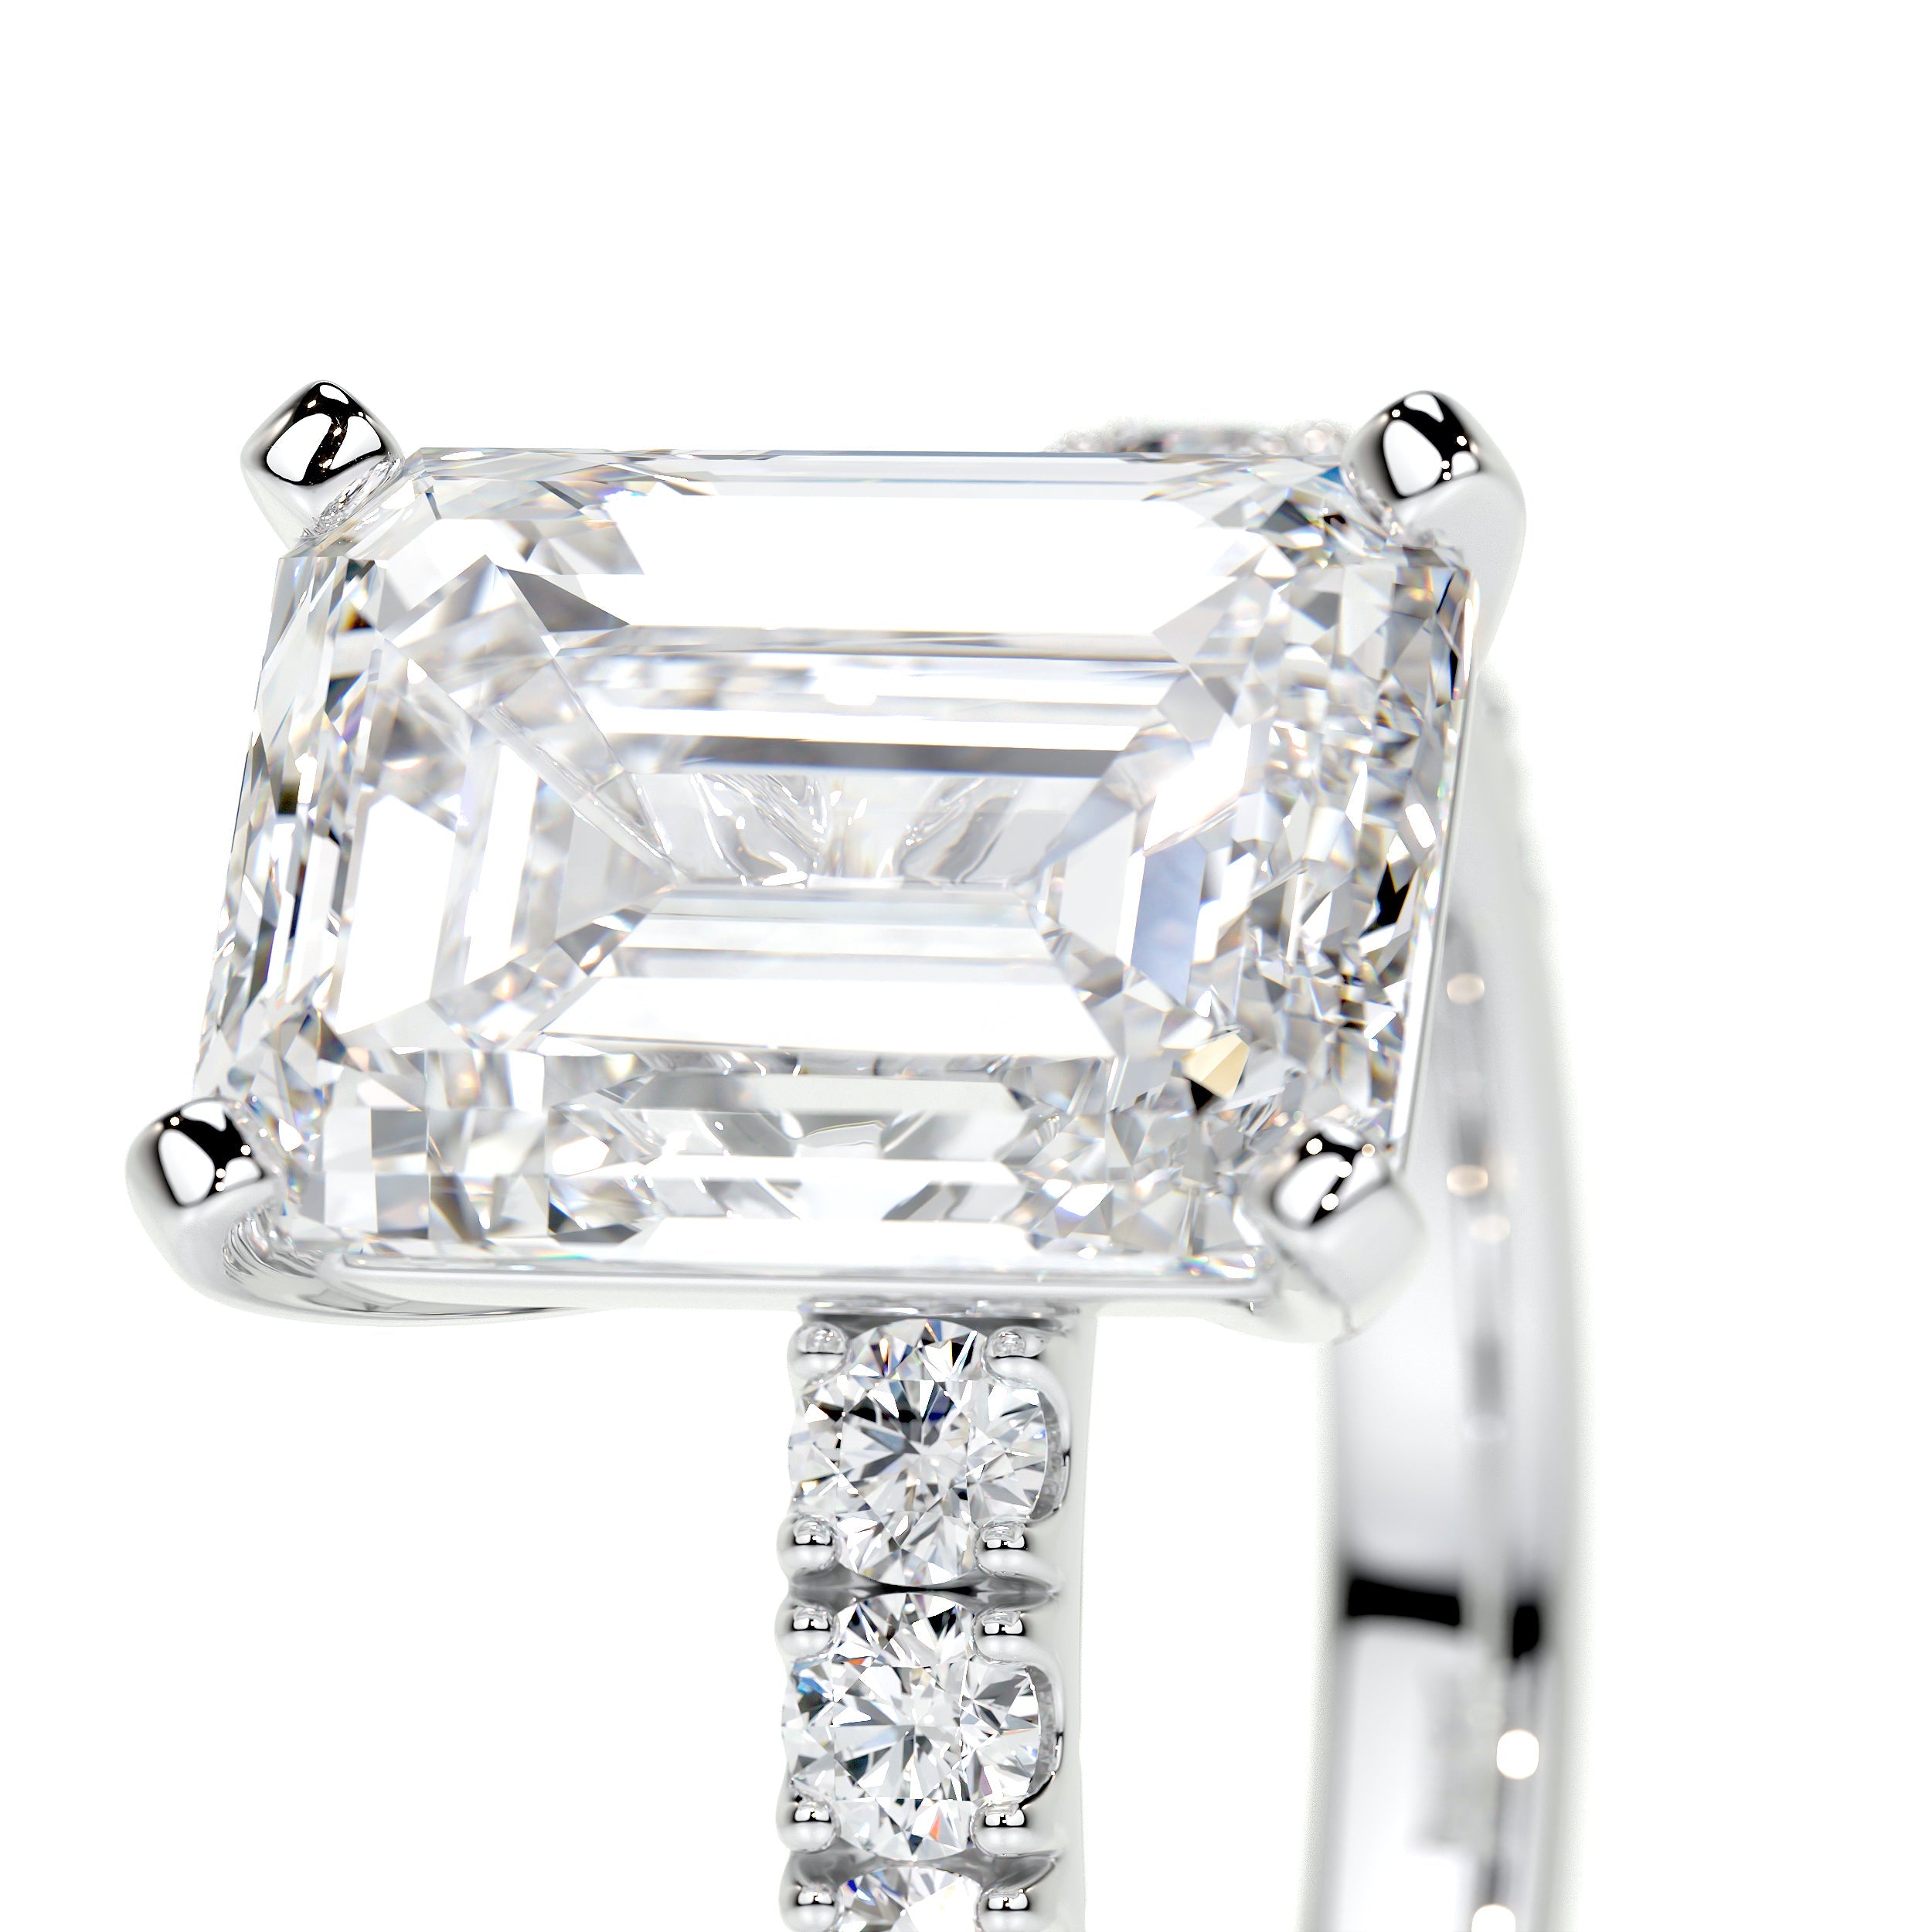 Royal Lab Grown Diamond Ring   (3.5 Carat) -14K White Gold